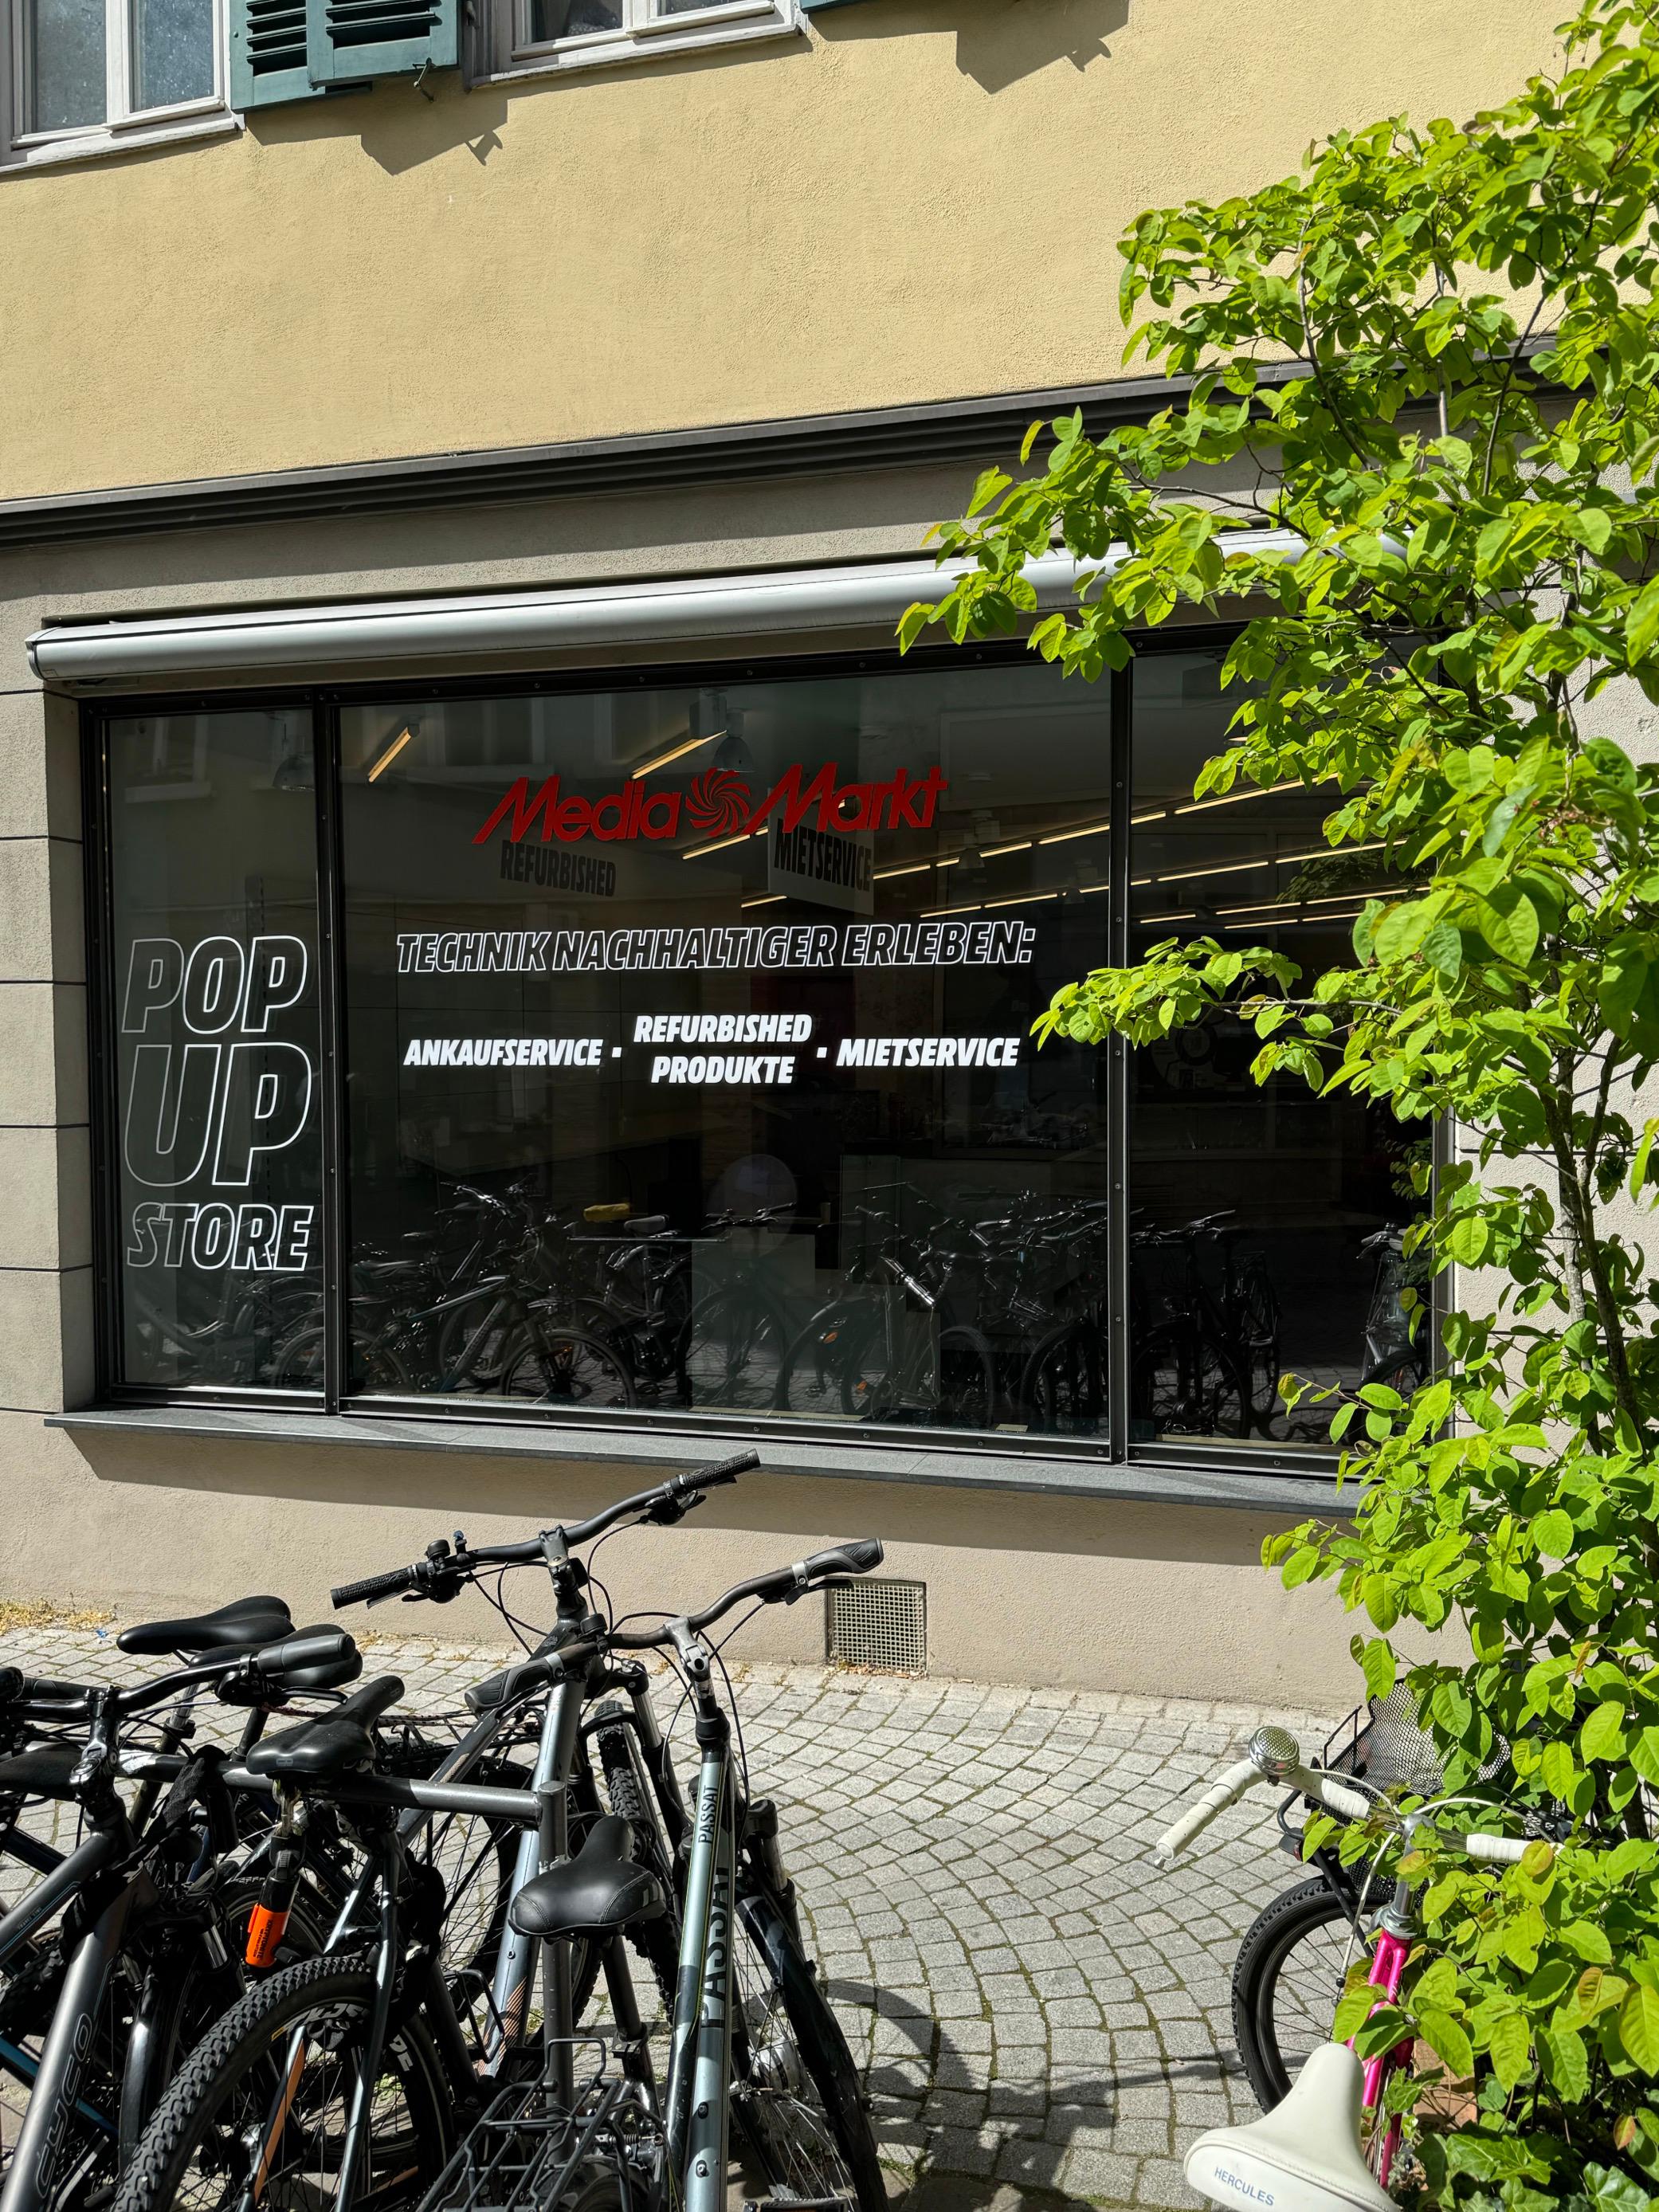 MediaMarkt Pop-Up-Store (Gebrauchtelektronik), Am Lustnauer Tor 7 in Tübingen